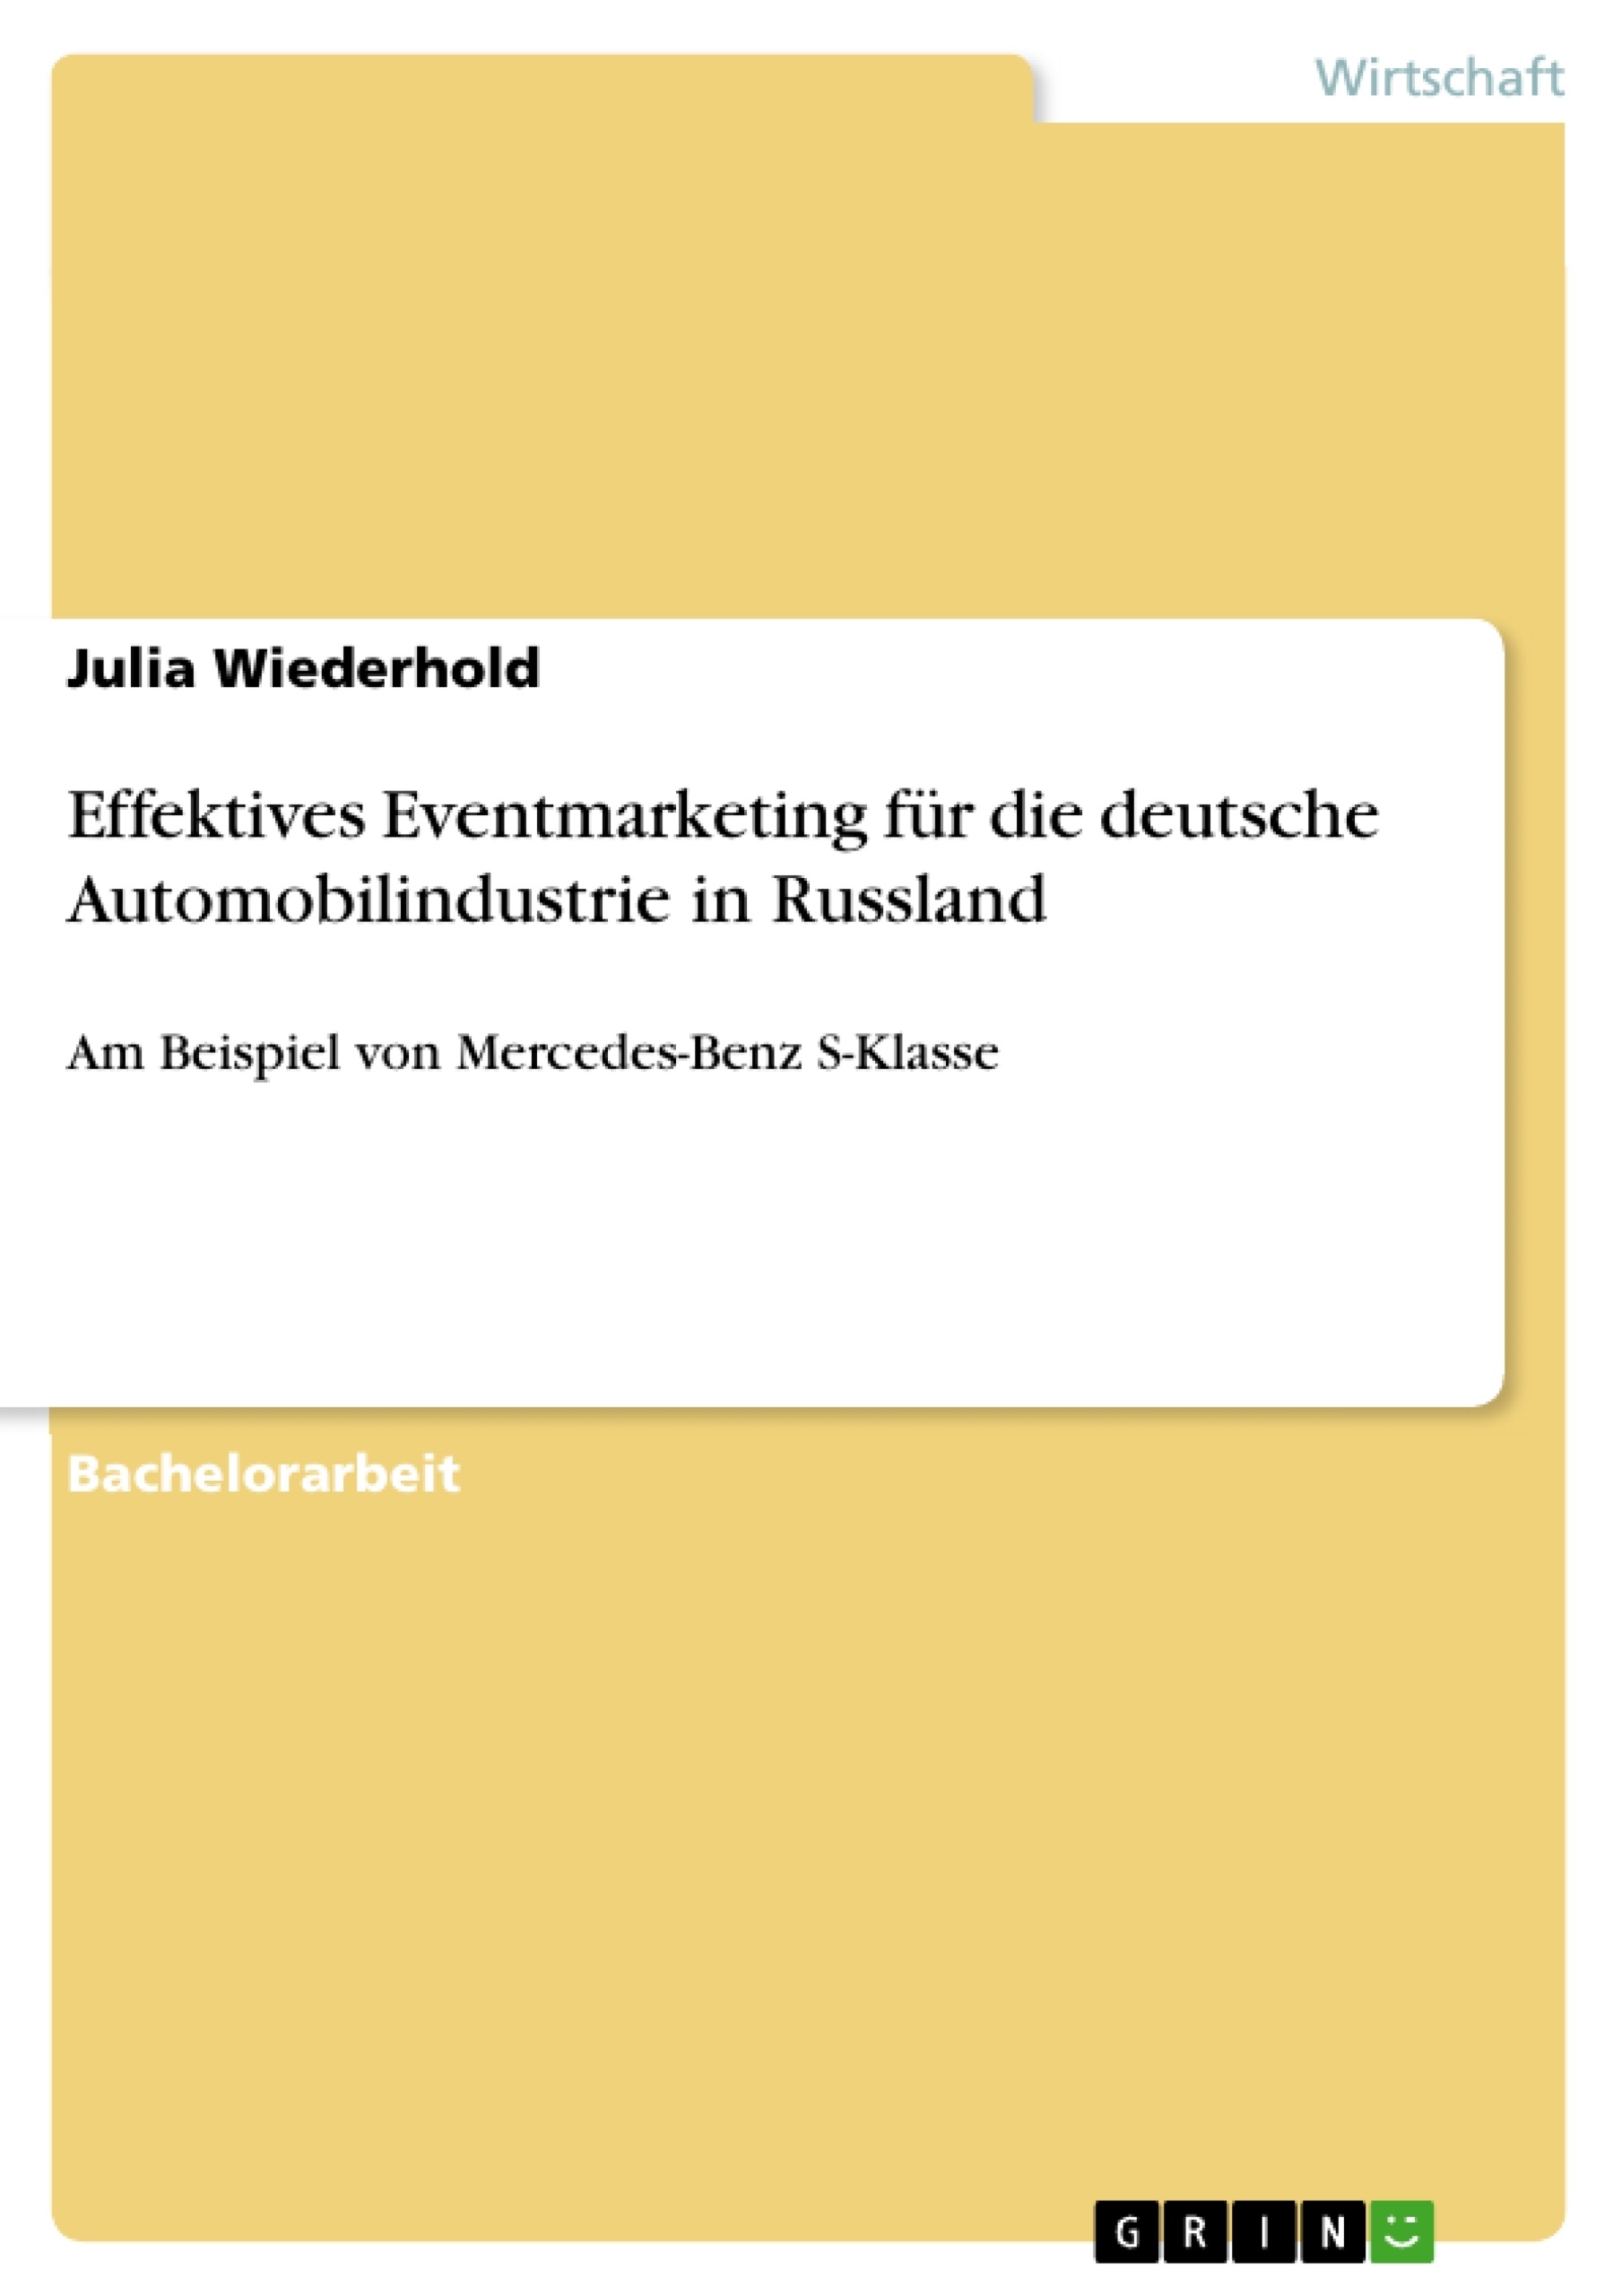 Title: Effektives Eventmarketing für die deutsche Automobilindustrie in Russland